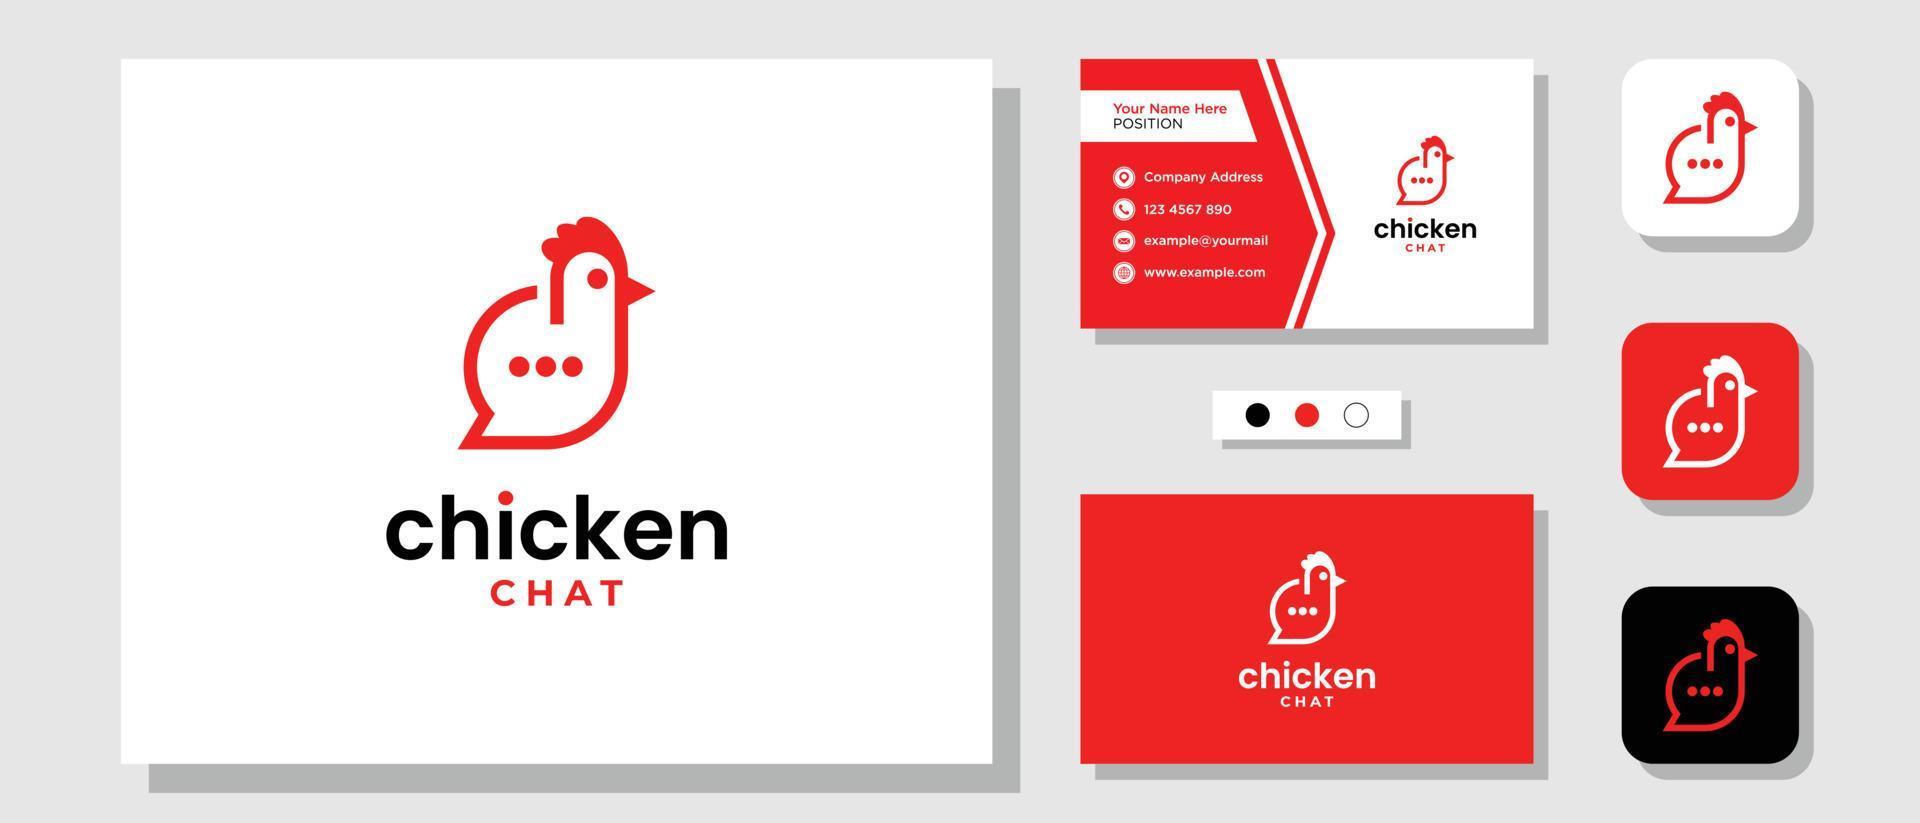 kip bubble chat eten bericht praten boerderij restaurant logo ontwerp met lay-out sjabloon visitekaartje vector